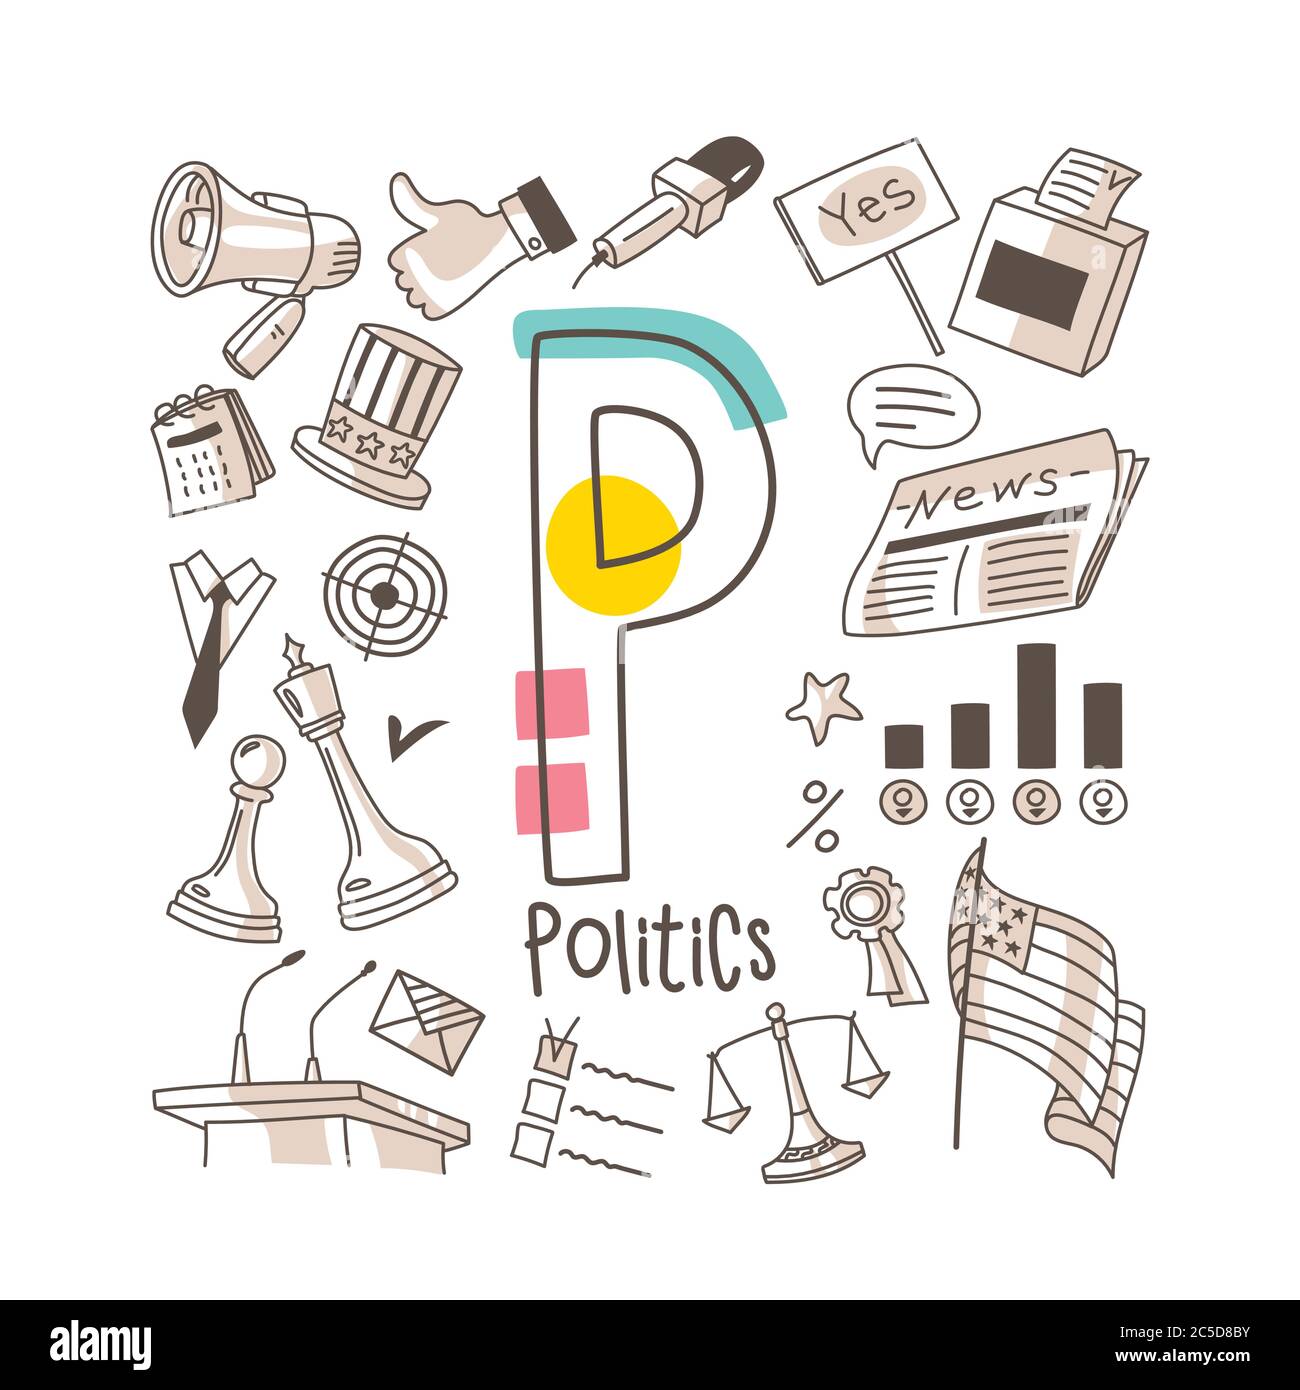 Buchstabe P - Politik, nette Alphabet-Reihe im Doodle-Stil, Vektor-Abbildung Stock Vektor